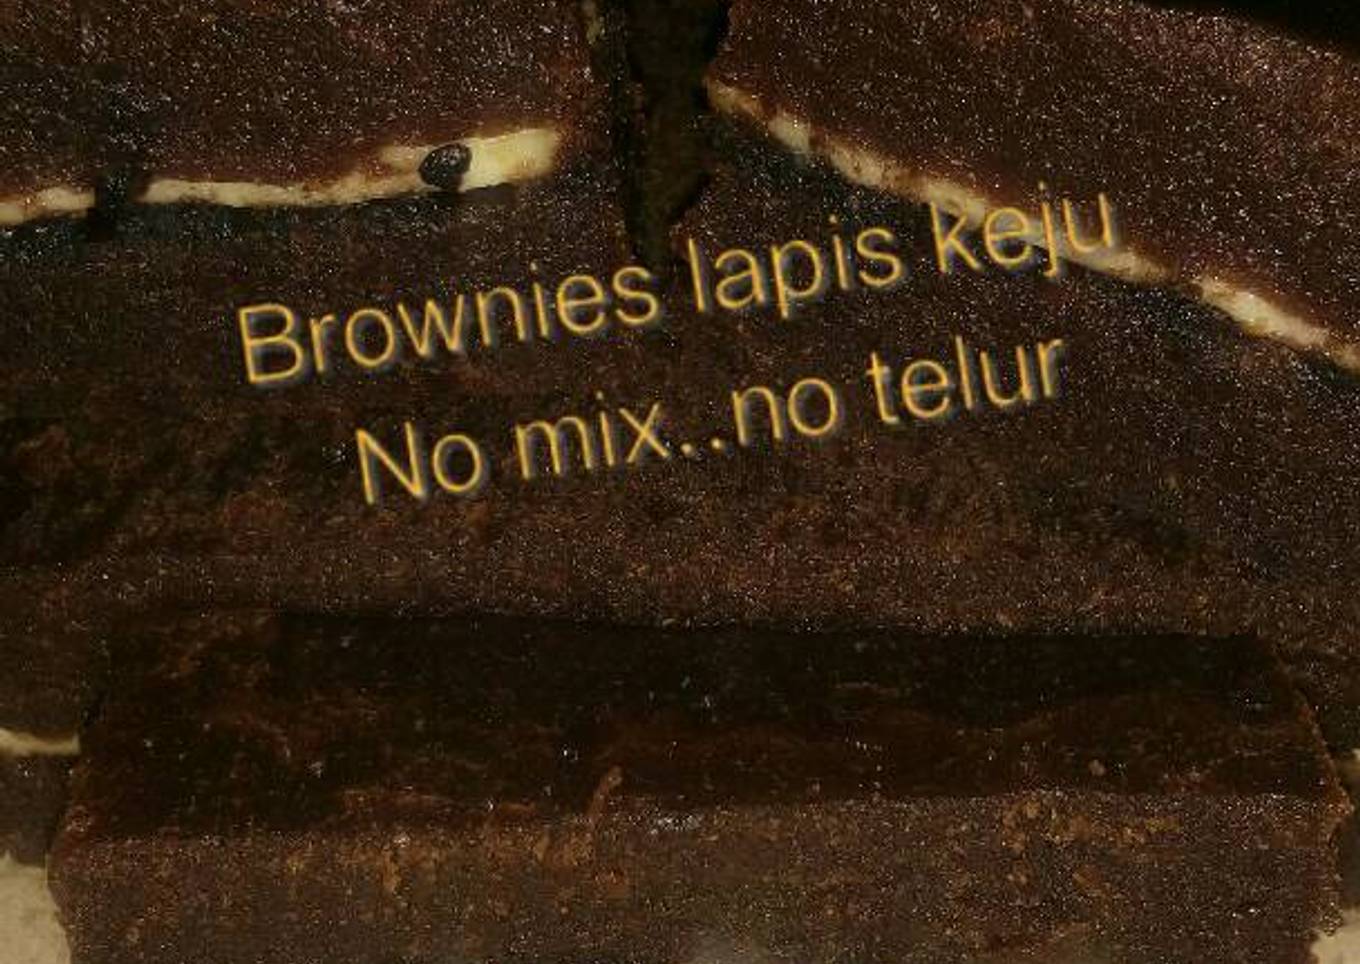 Brownies kukus lapis keju No mix..no telur